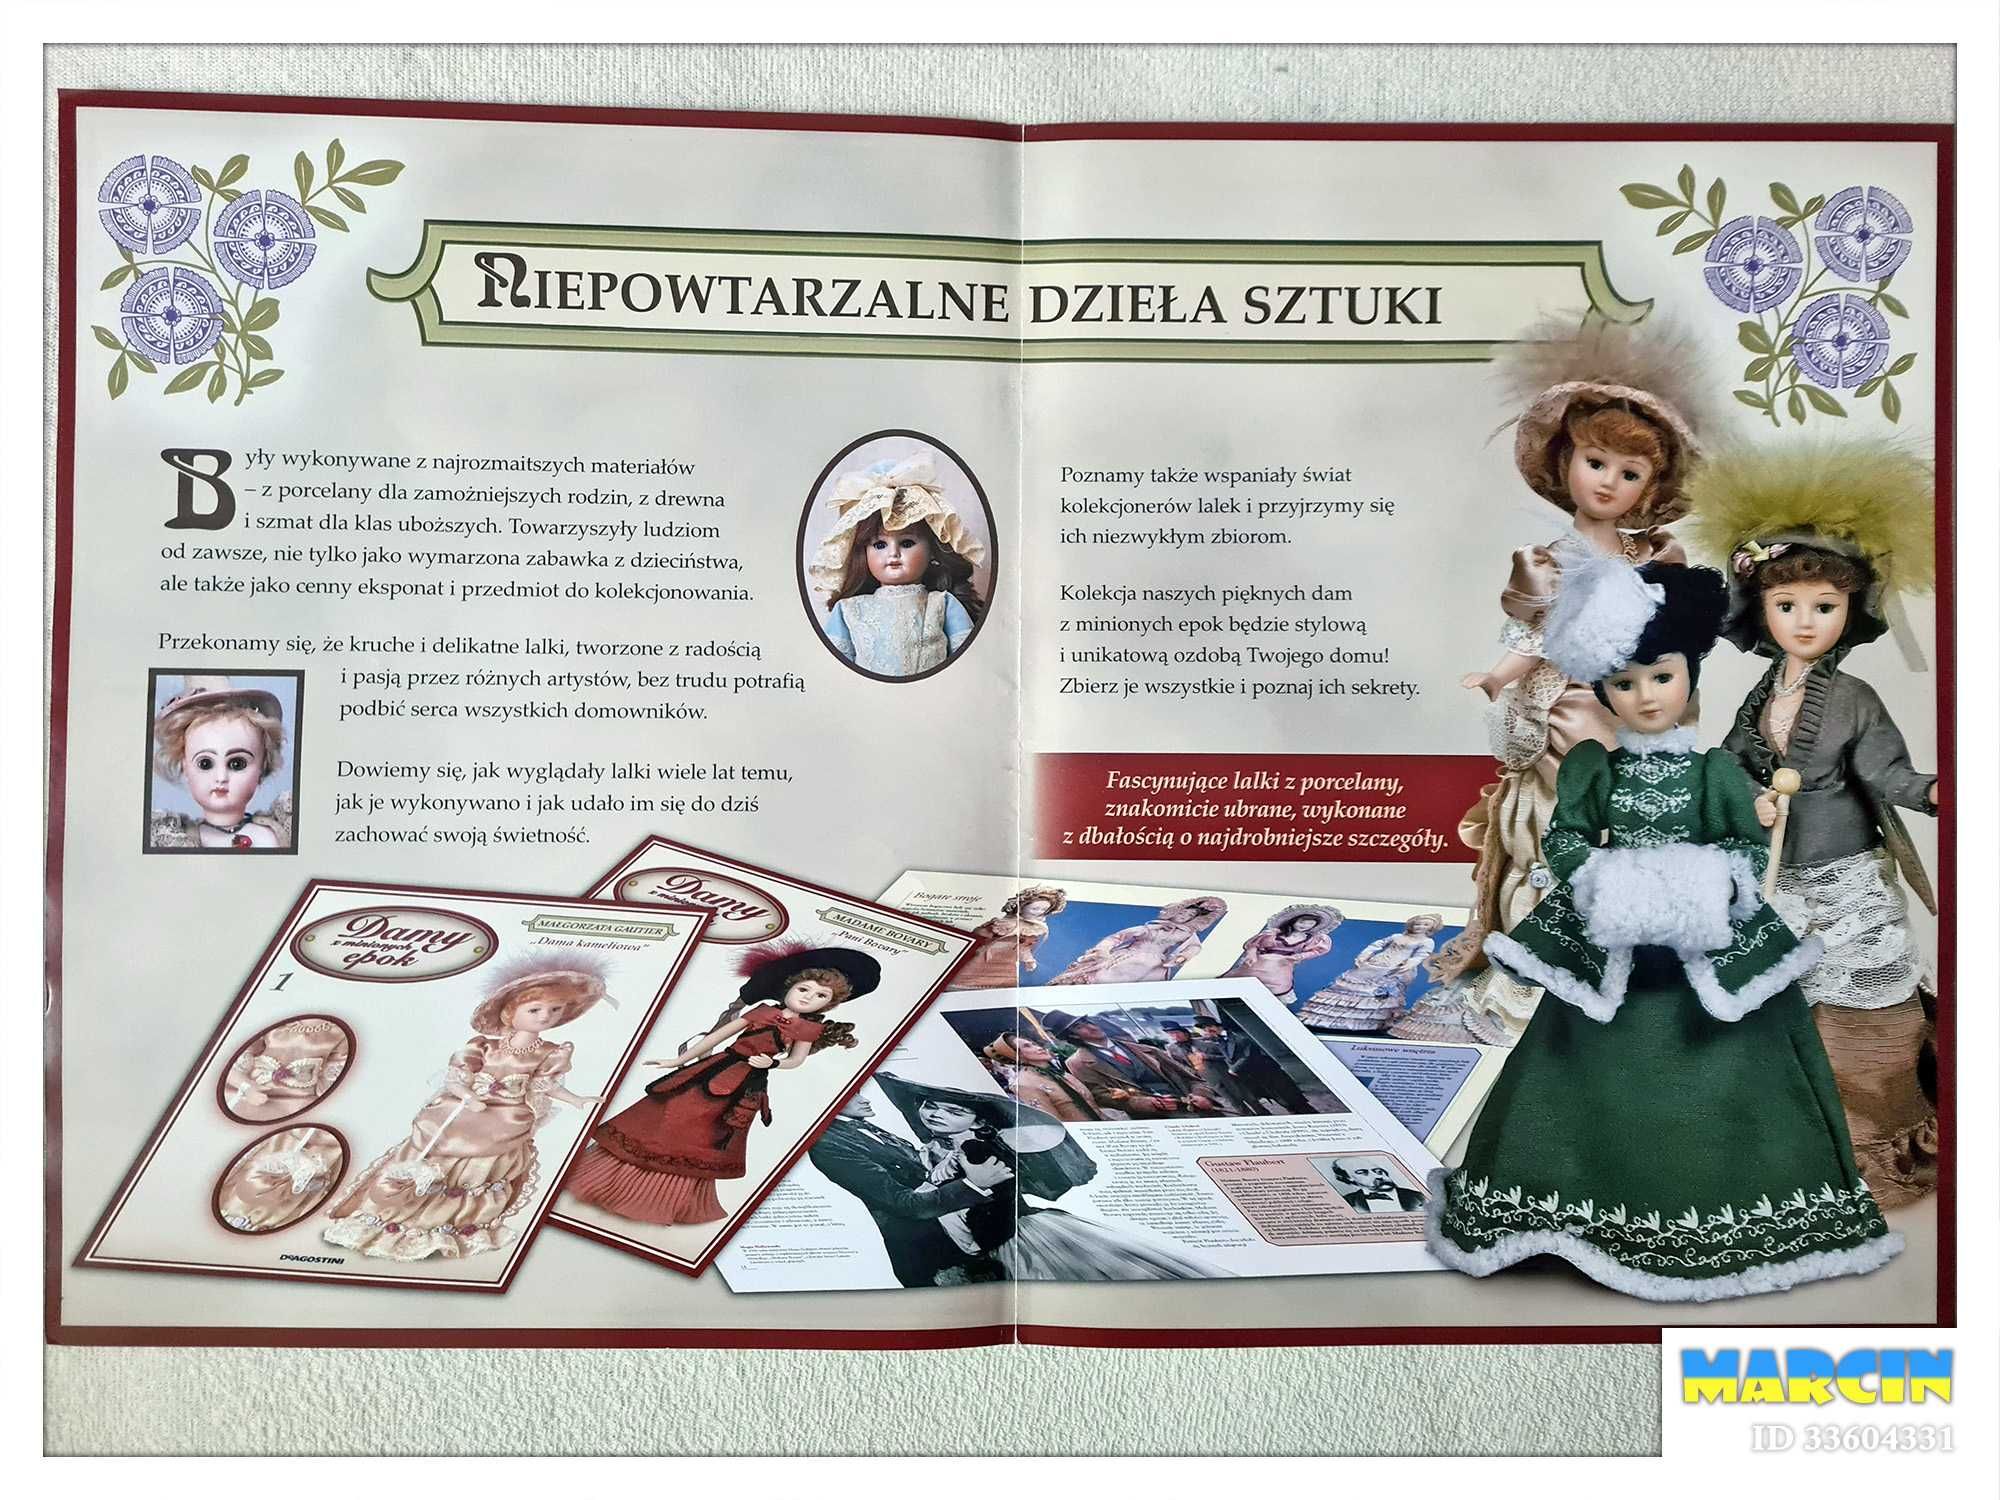 Damy z minionych epok - pełna seria lalek 2014/2015 Deagostini // NOWE